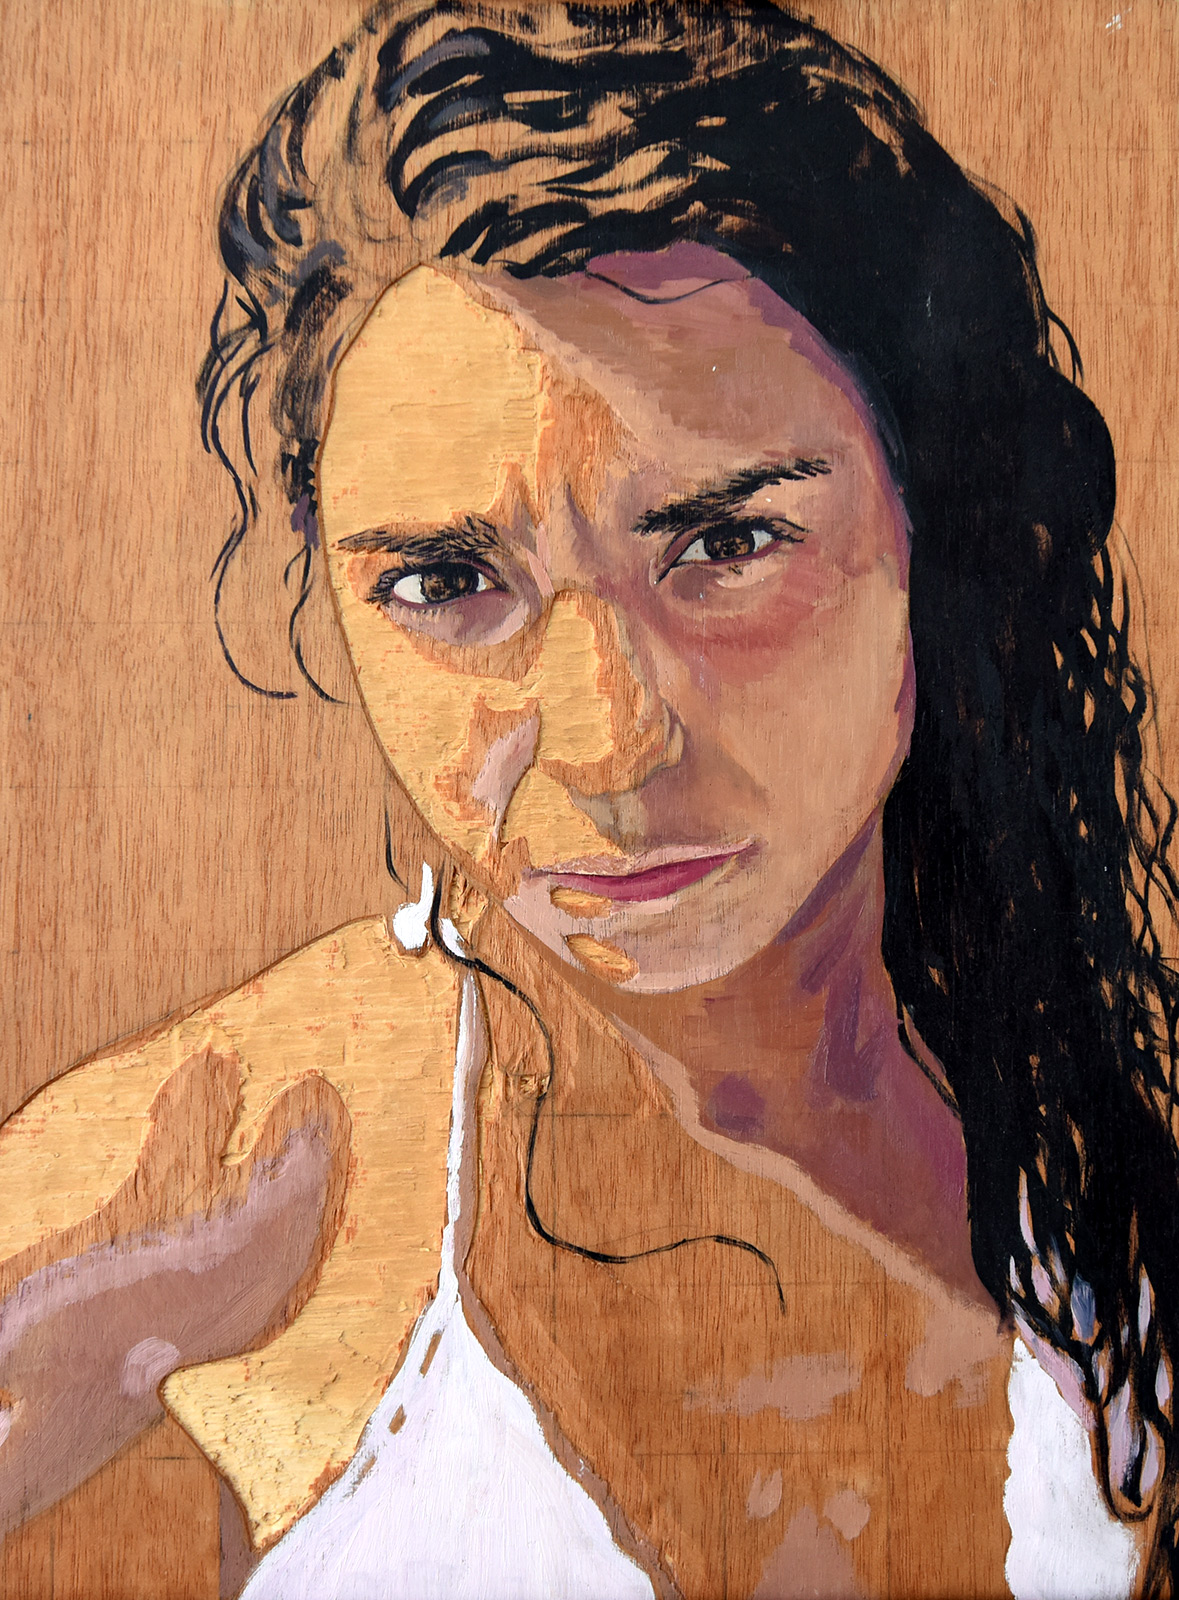 Carmen - Madera de contrachapado tallada y pintada al óleo - 30x40 cm - 2007 - Matute Art